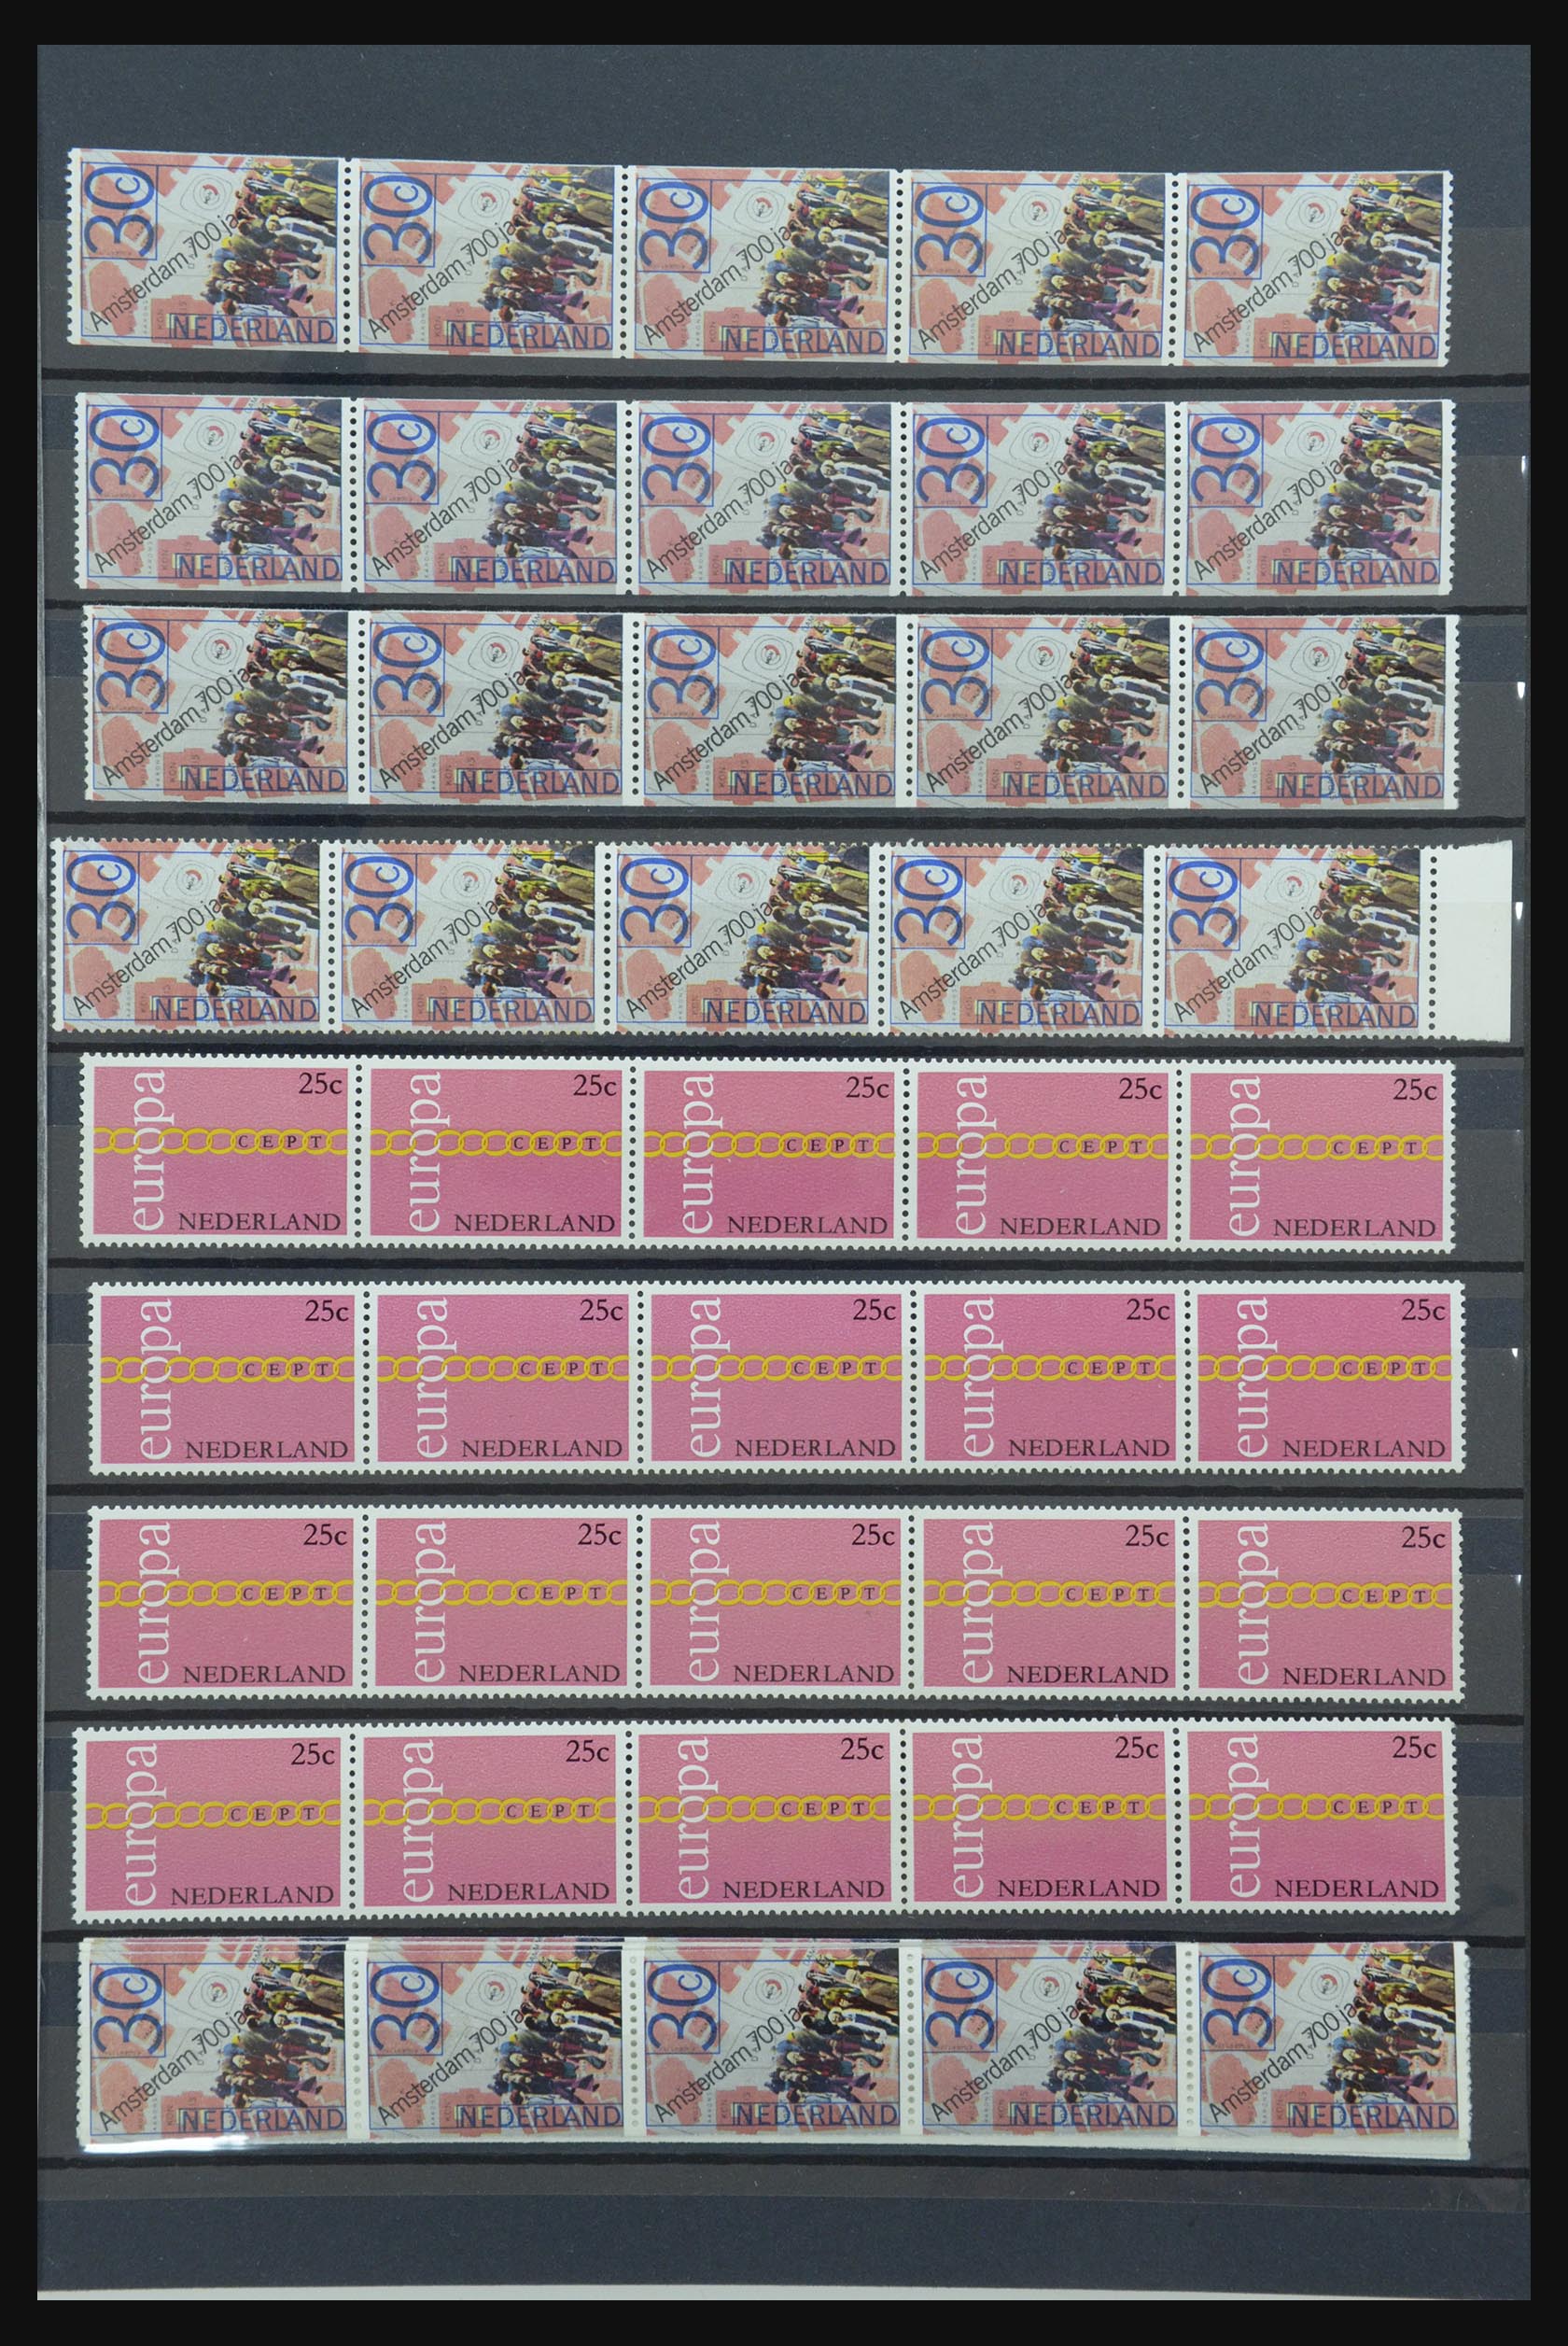 31625 003 - 31625 Netherlands coilstamps 1965-2009.